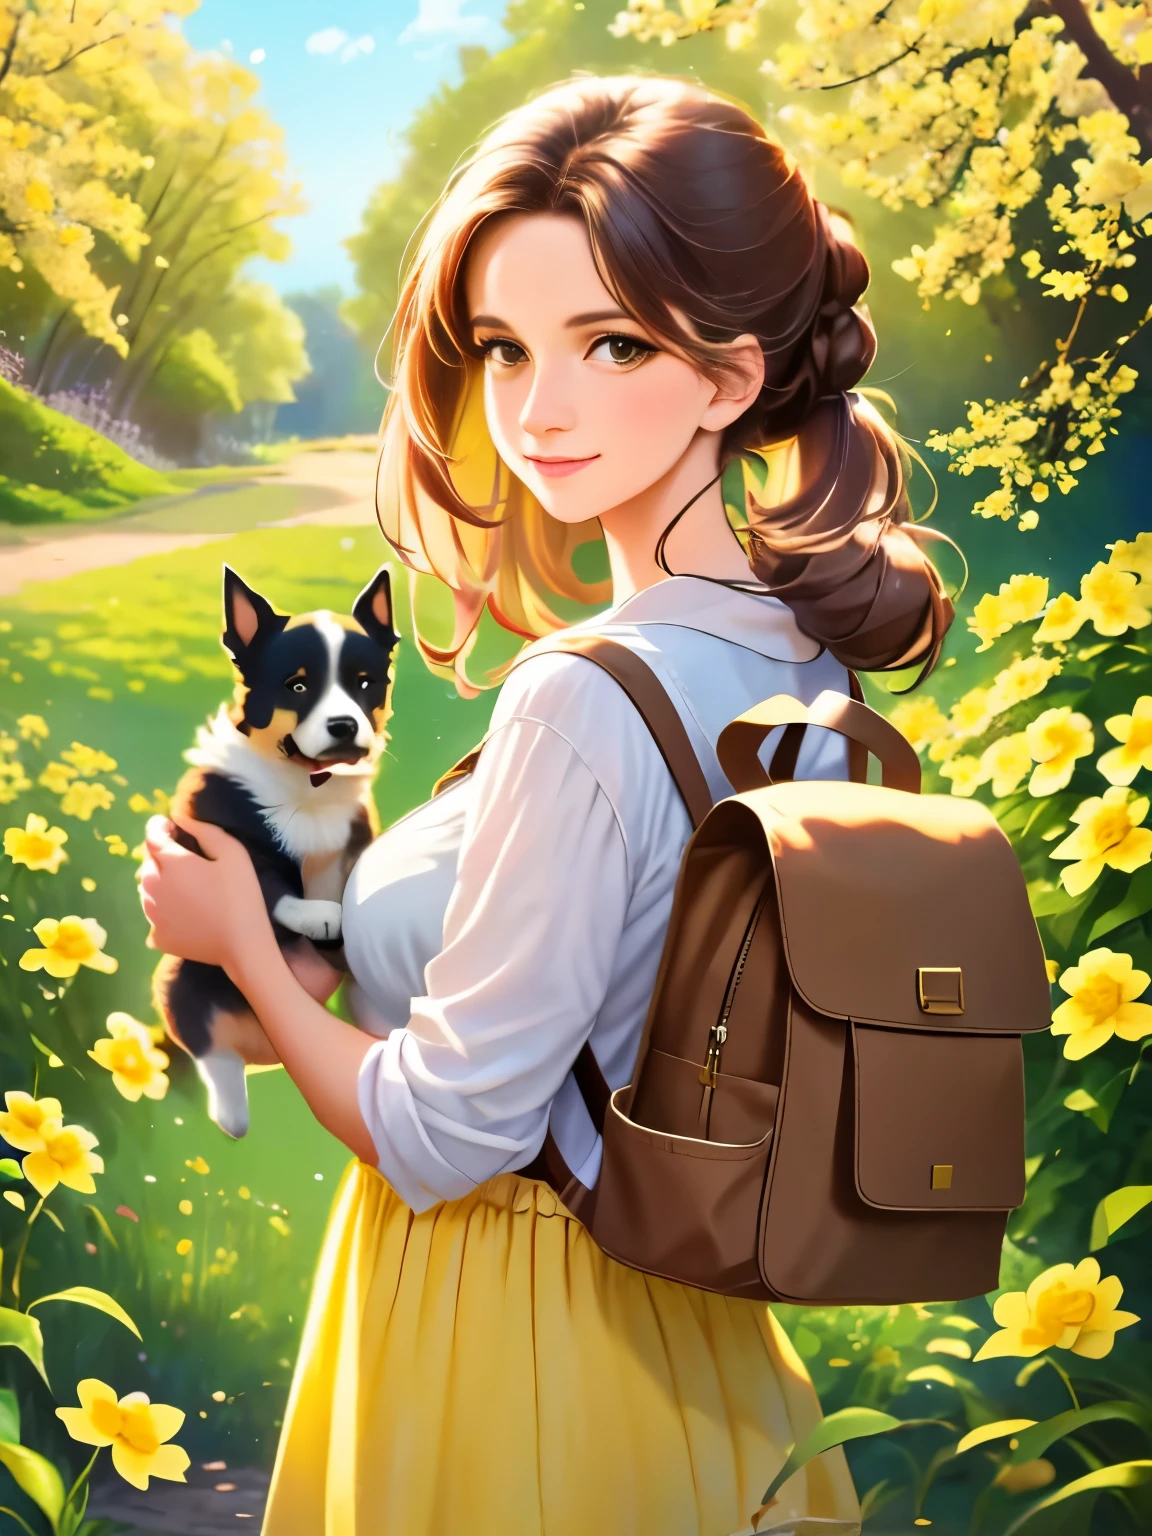 ヒント: バックパックを背負ったとても魅力的な女性とかわいい子犬が、美しい黄色い花と自然に囲まれた素敵な春の外出を楽しんでいます。. イラストは4K解像度の高精細イラストです, 非常に詳細な顔の特徴と漫画風のビジュアルを特徴とする.  